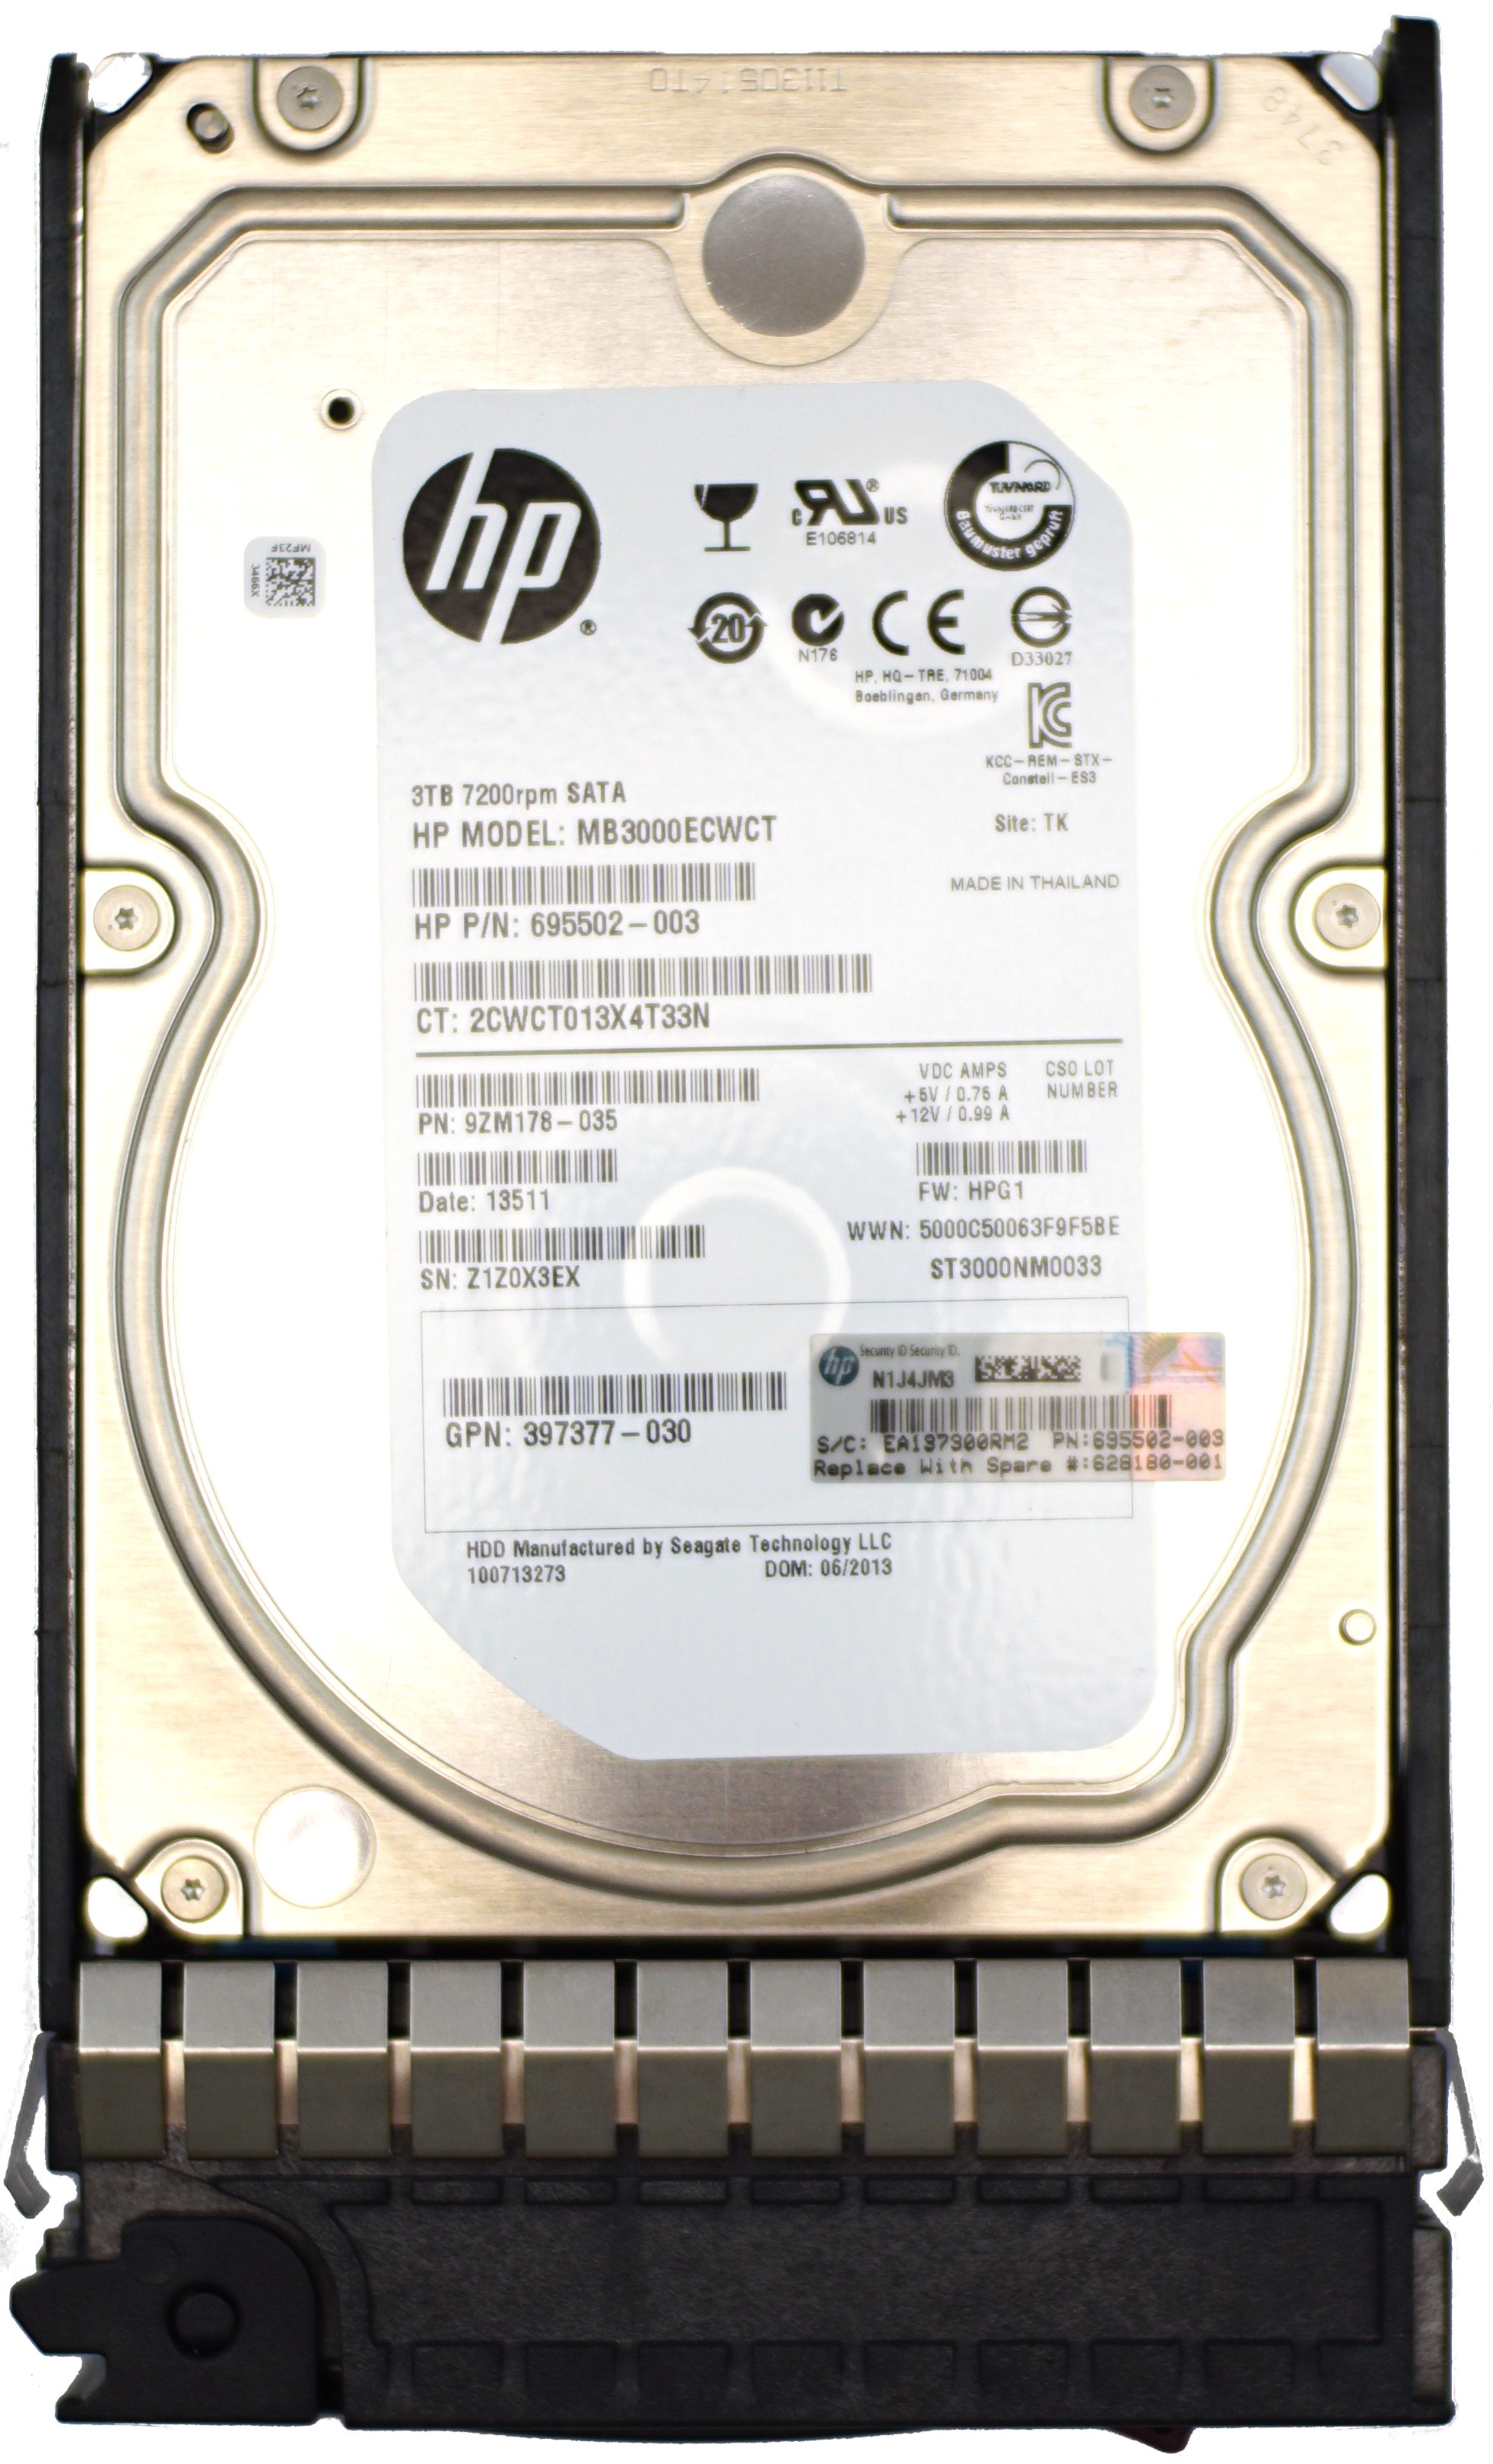 HP (695502-003) 3TB SATA (3.5") 3Gb/s 7.2K HDD in G5/G6/G7 Hot-Swap Caddy